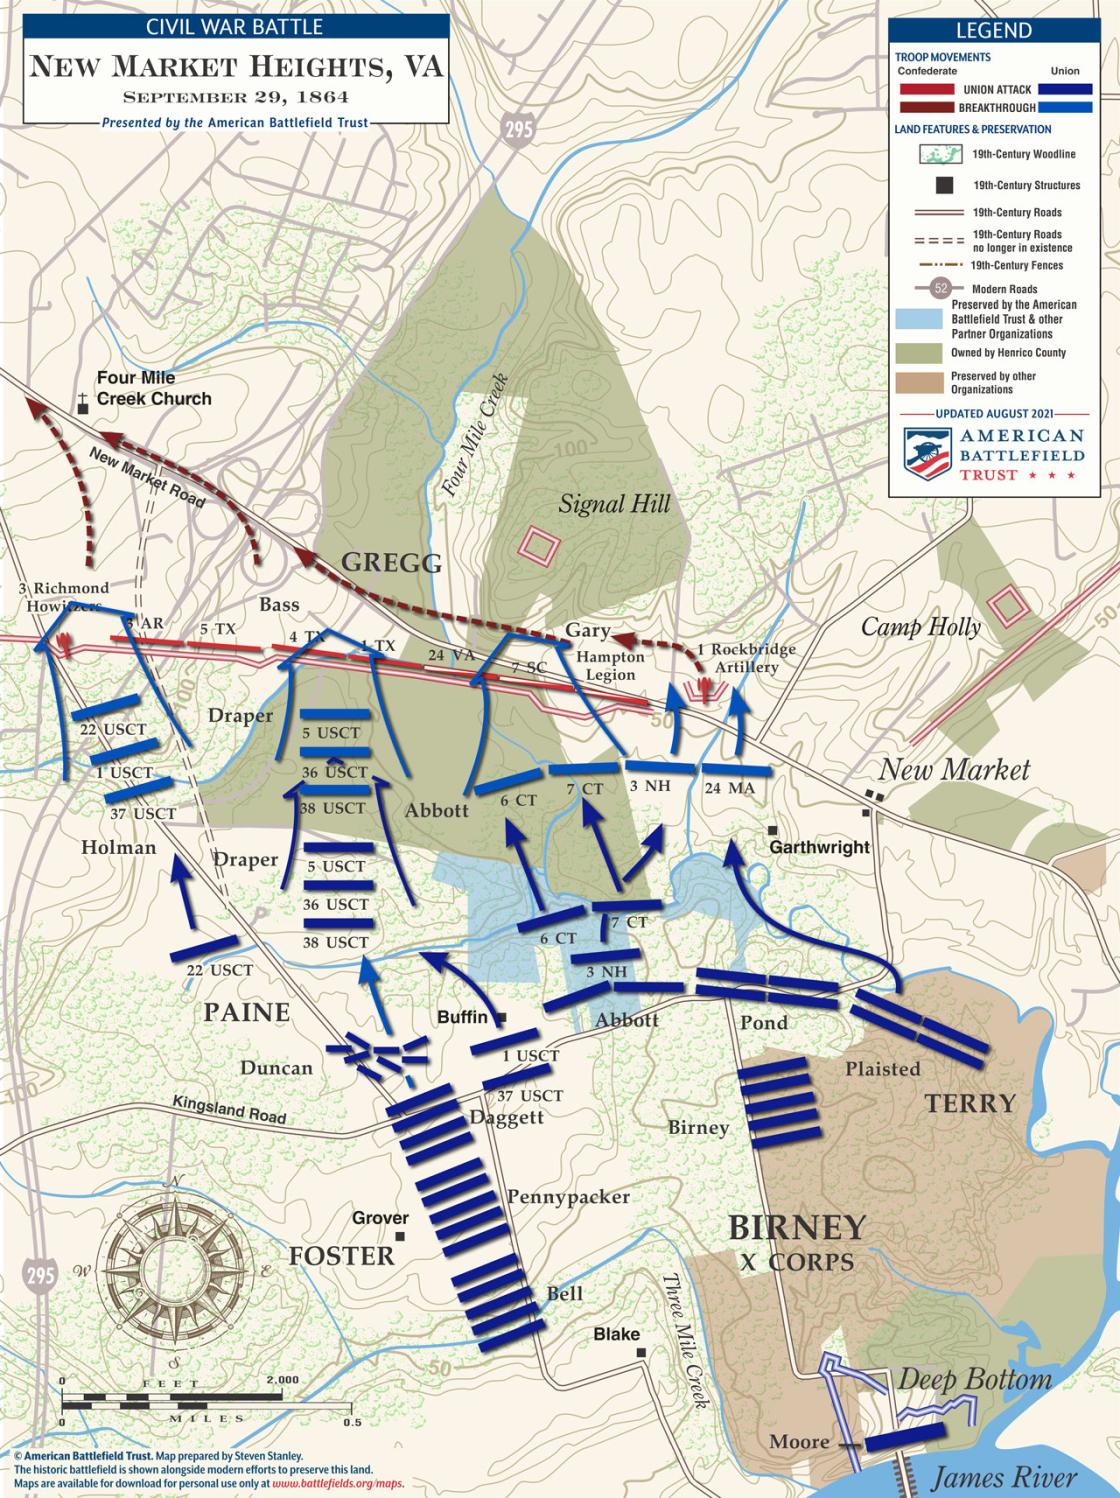 New Market Heights - September 29, 1864 Battle Map